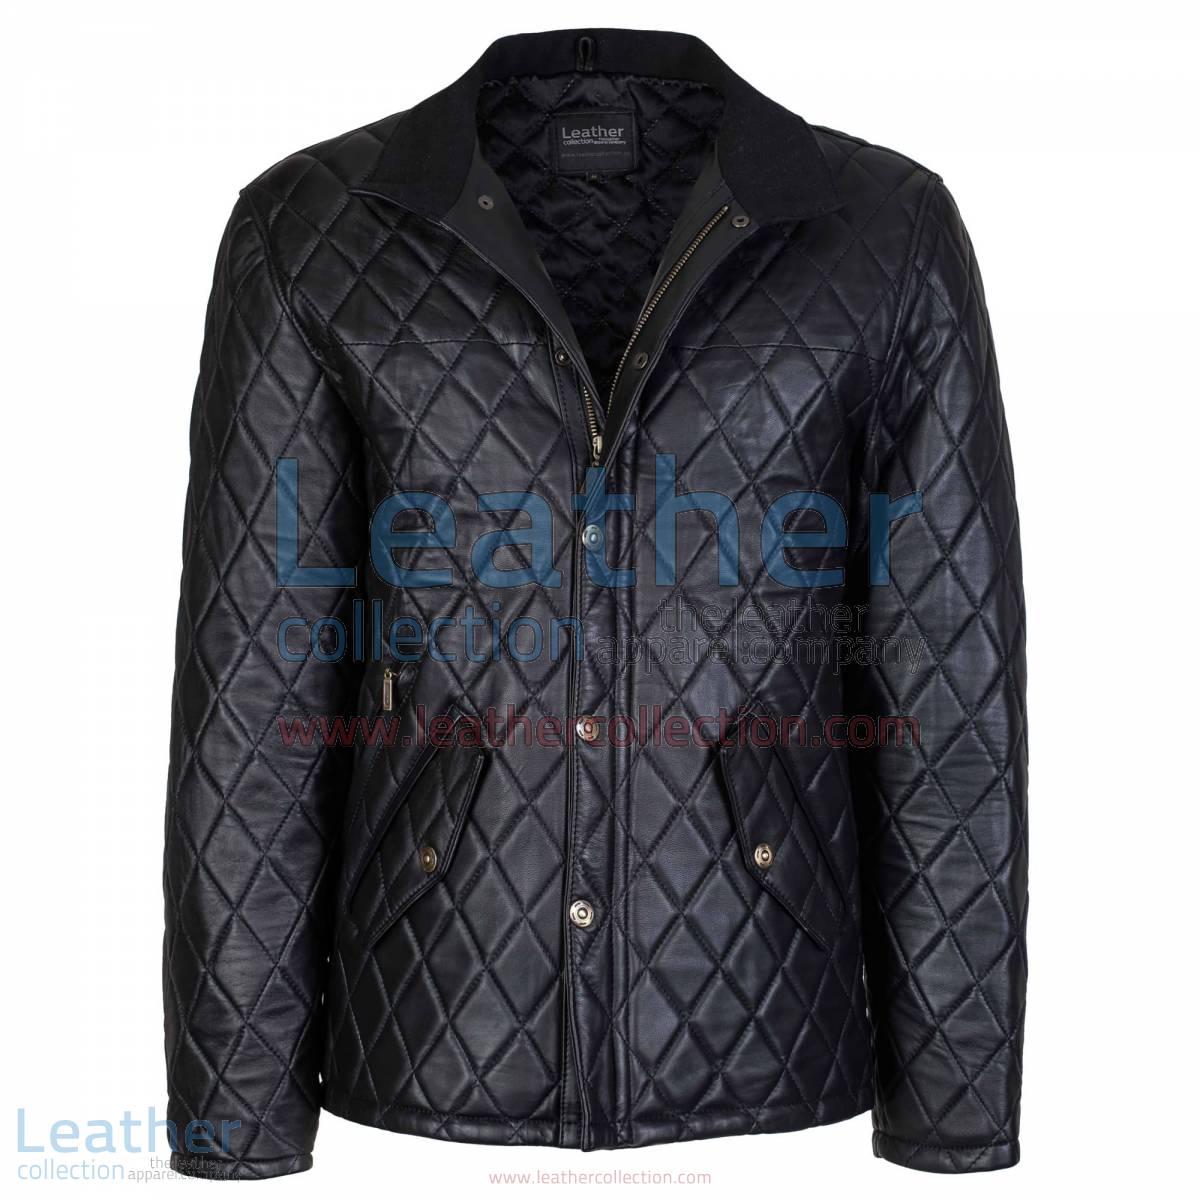 Black Diamond Leather Jacket | diamond jacket